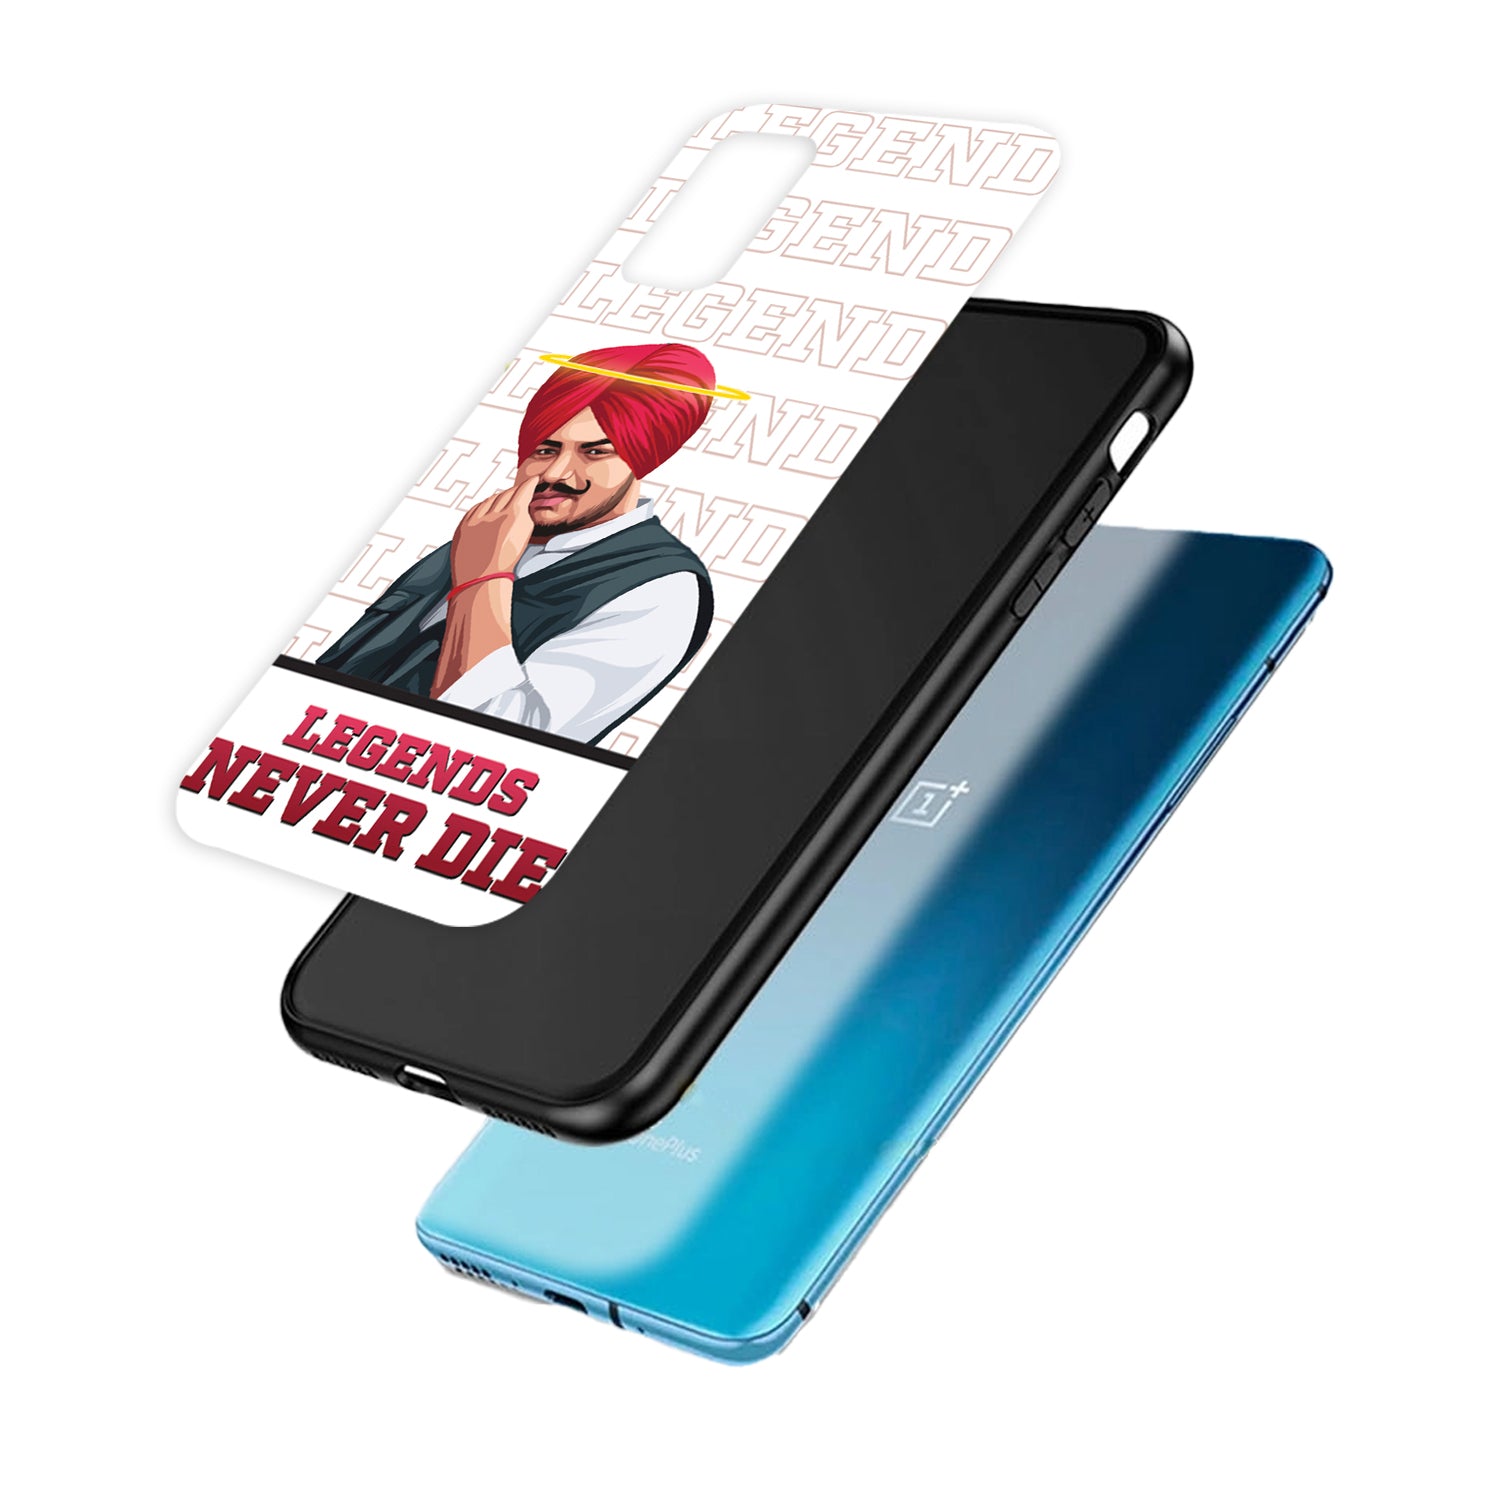 Legend Never Die Sidhu Moosewala OnePlus 10 R Back Case